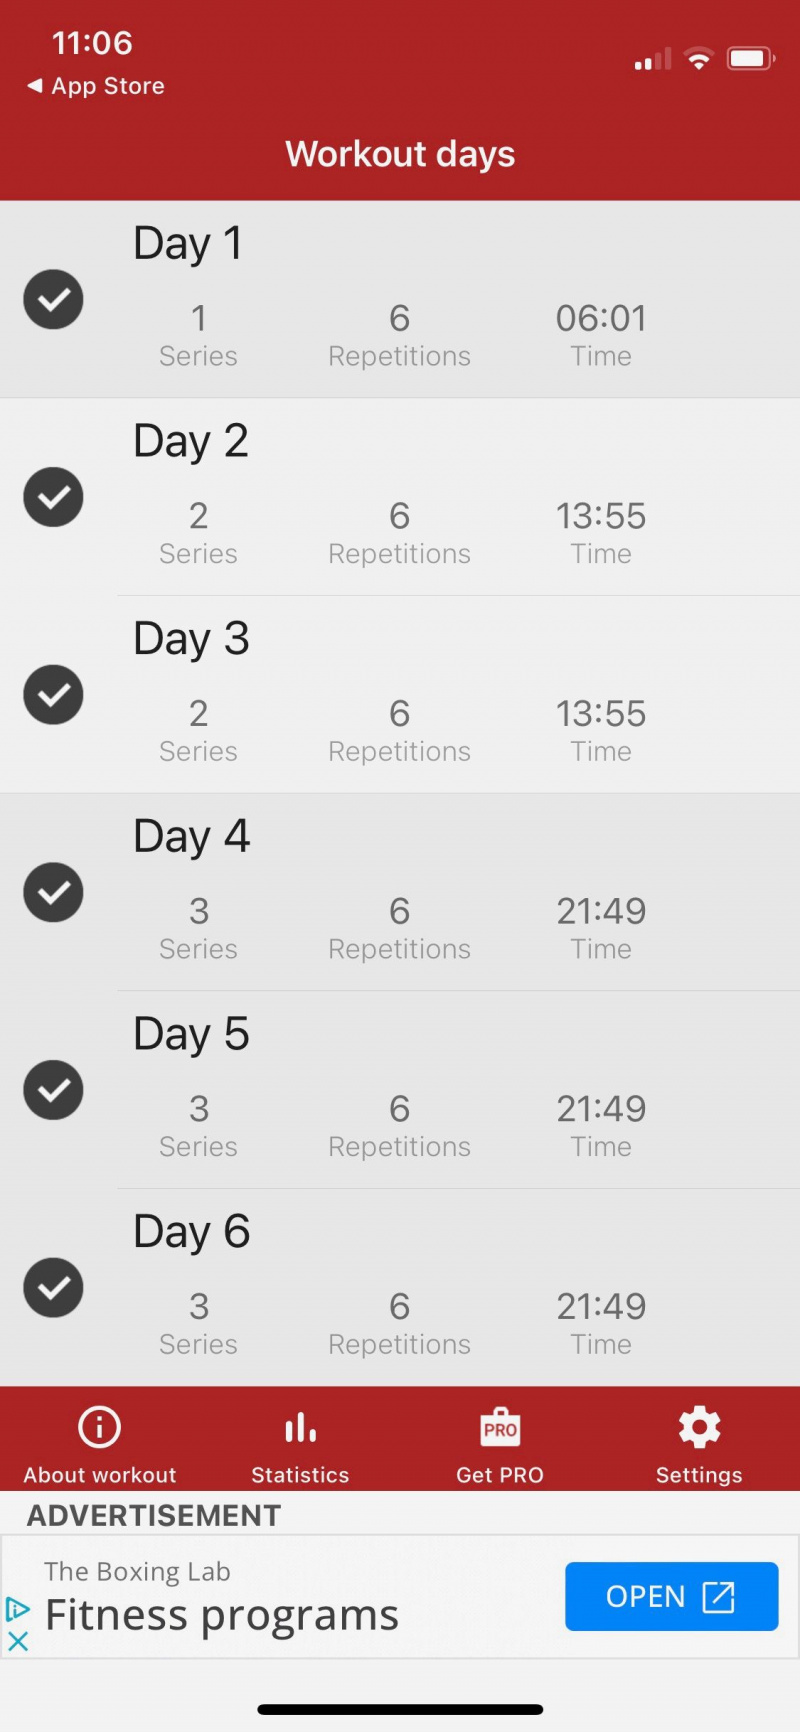   Skærmbillede af A6W app, der viser træningsdage